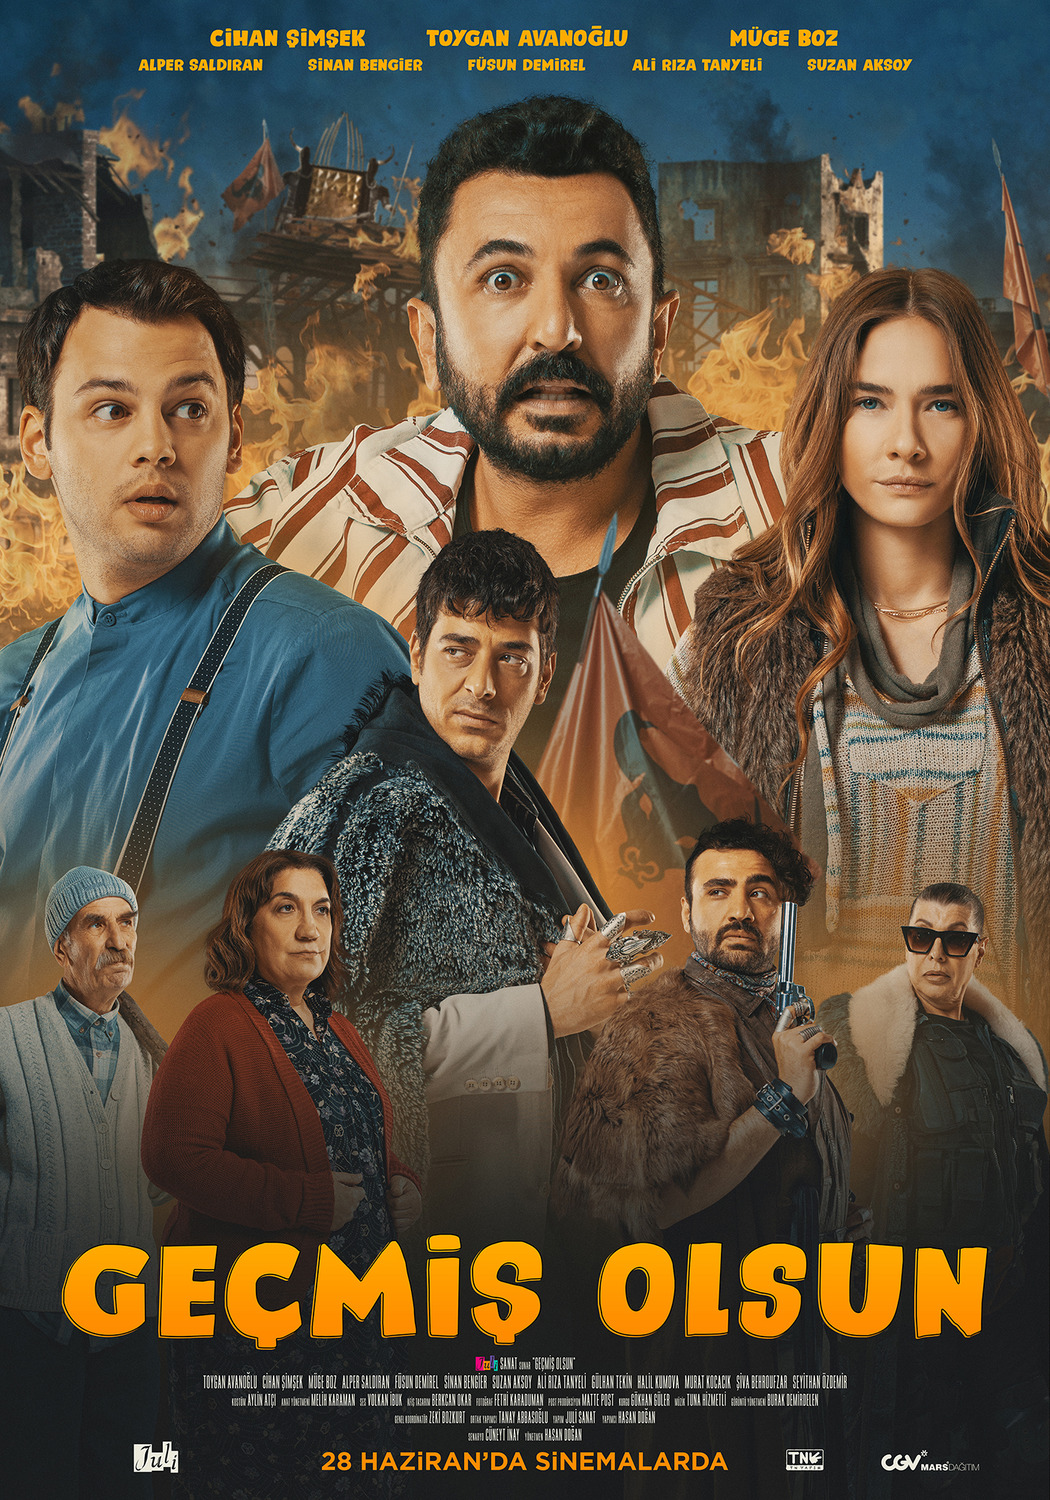 Extra Large Movie Poster Image for Geçmiş Olsun (#2 of 2)